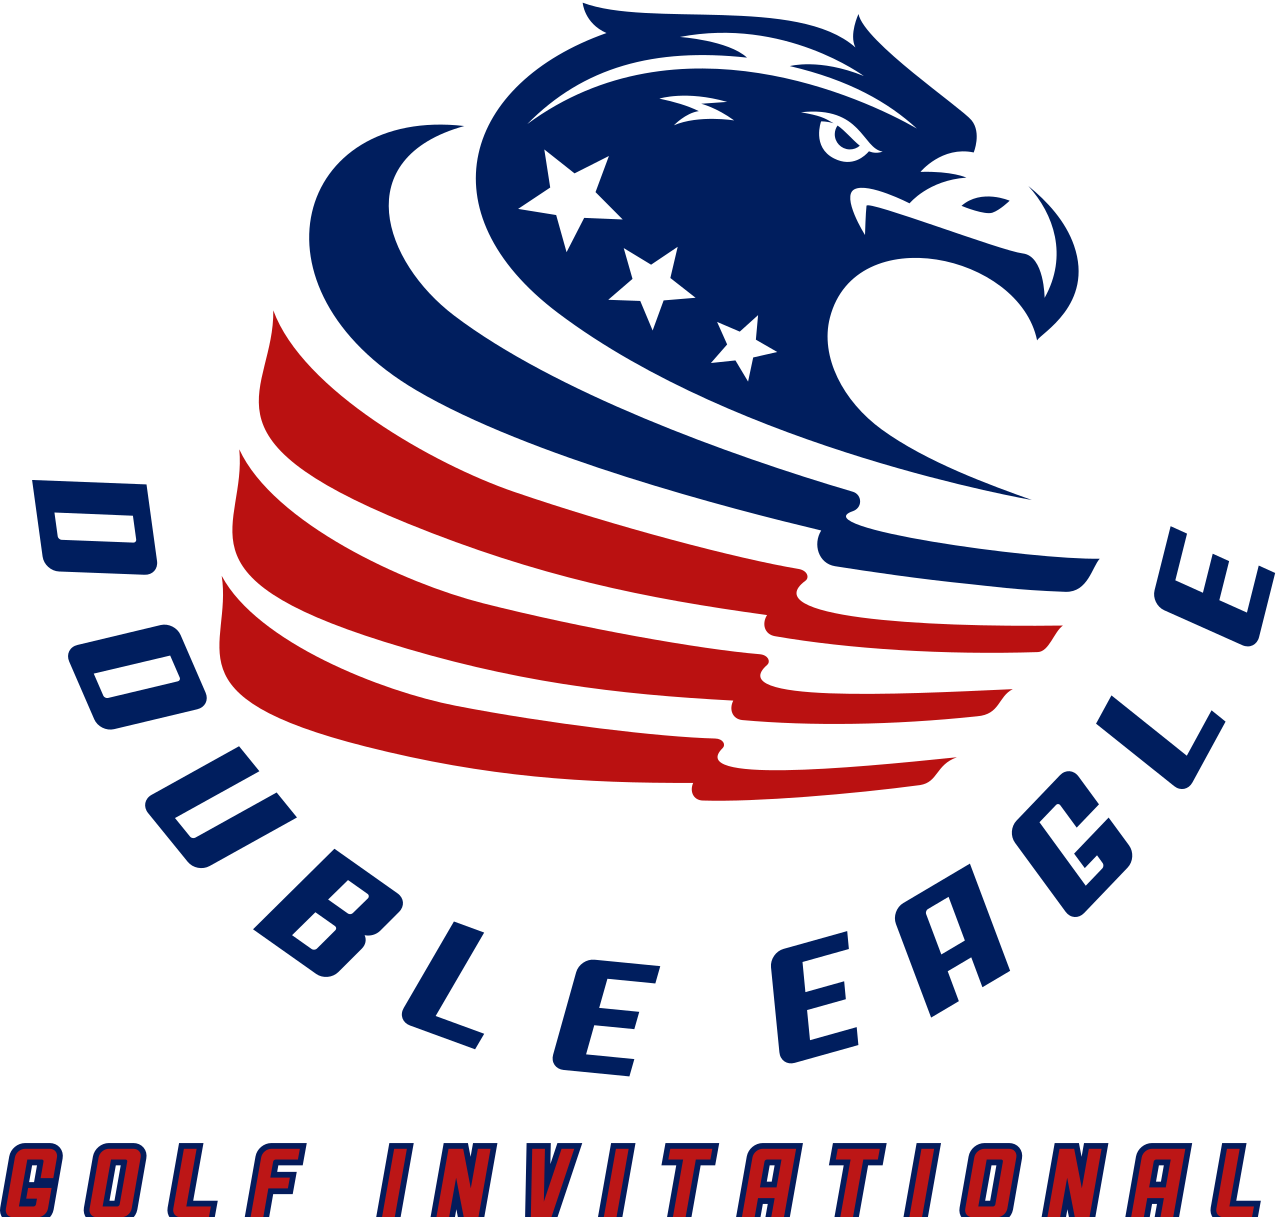 Double Eagle 's logo